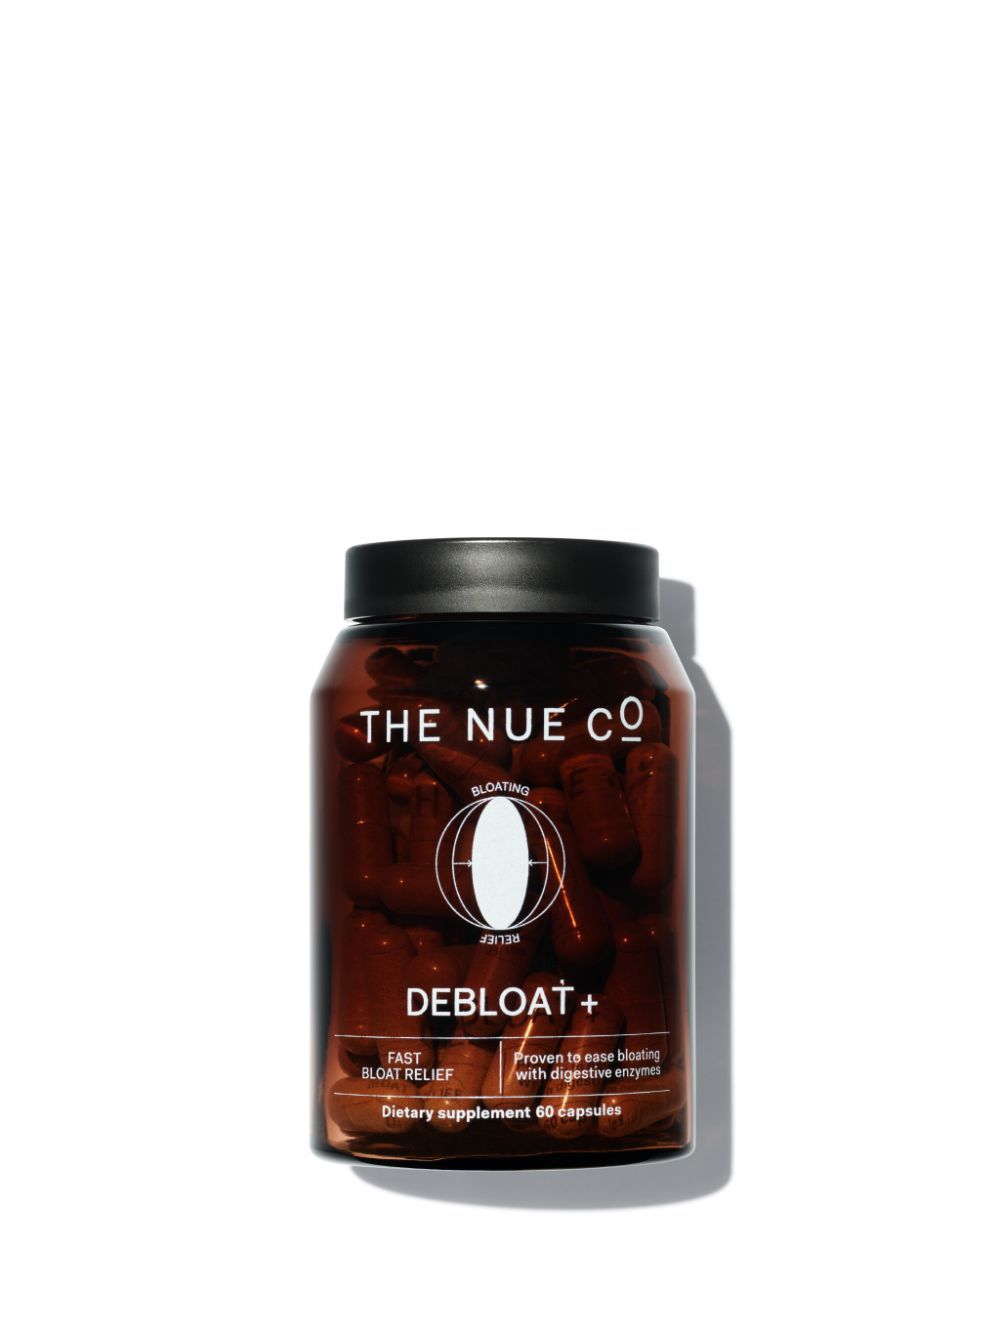 The Nue Co. Debloat+ | Violet Grey